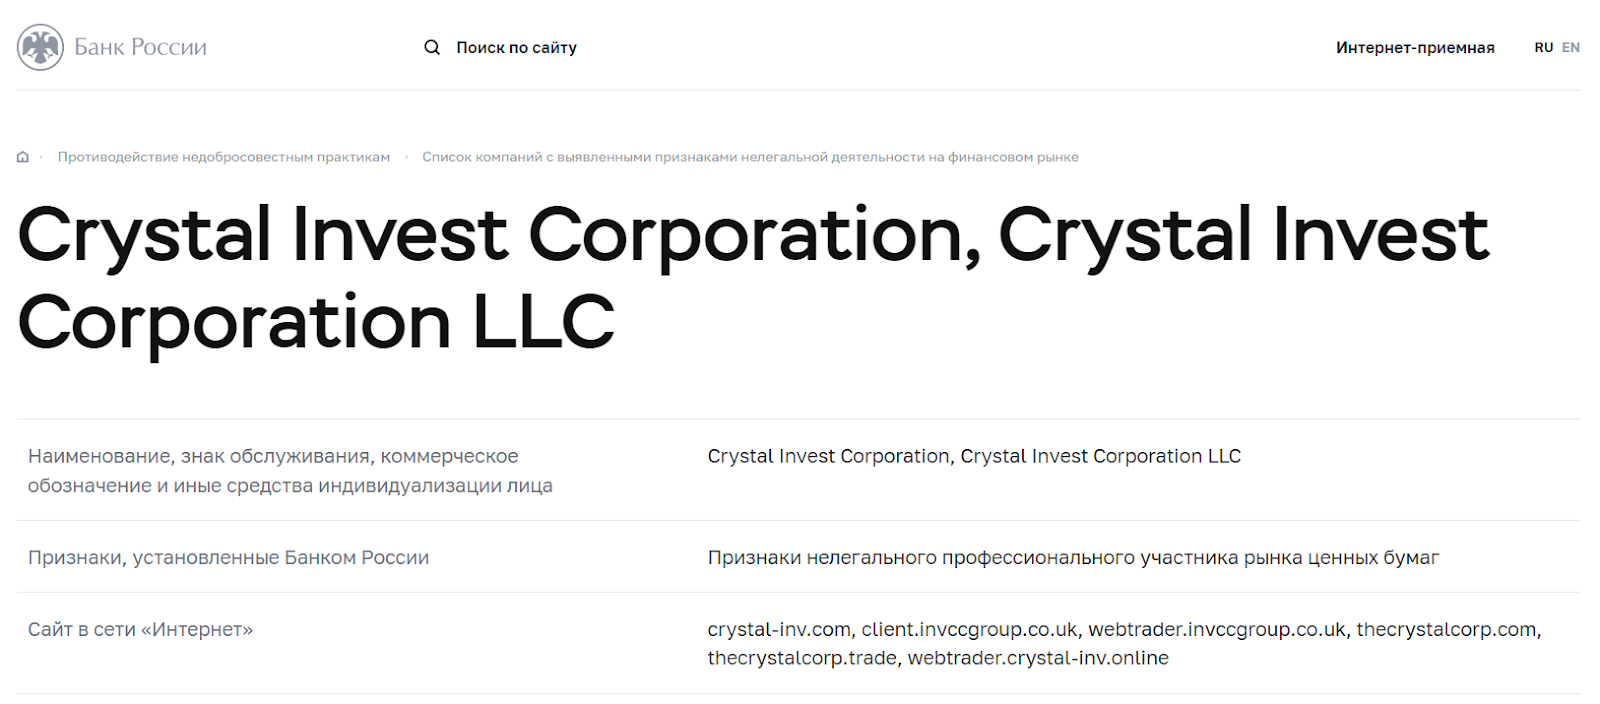 Отзывы о Crystal Invest, проверка основных сведений — Обман?  обзор